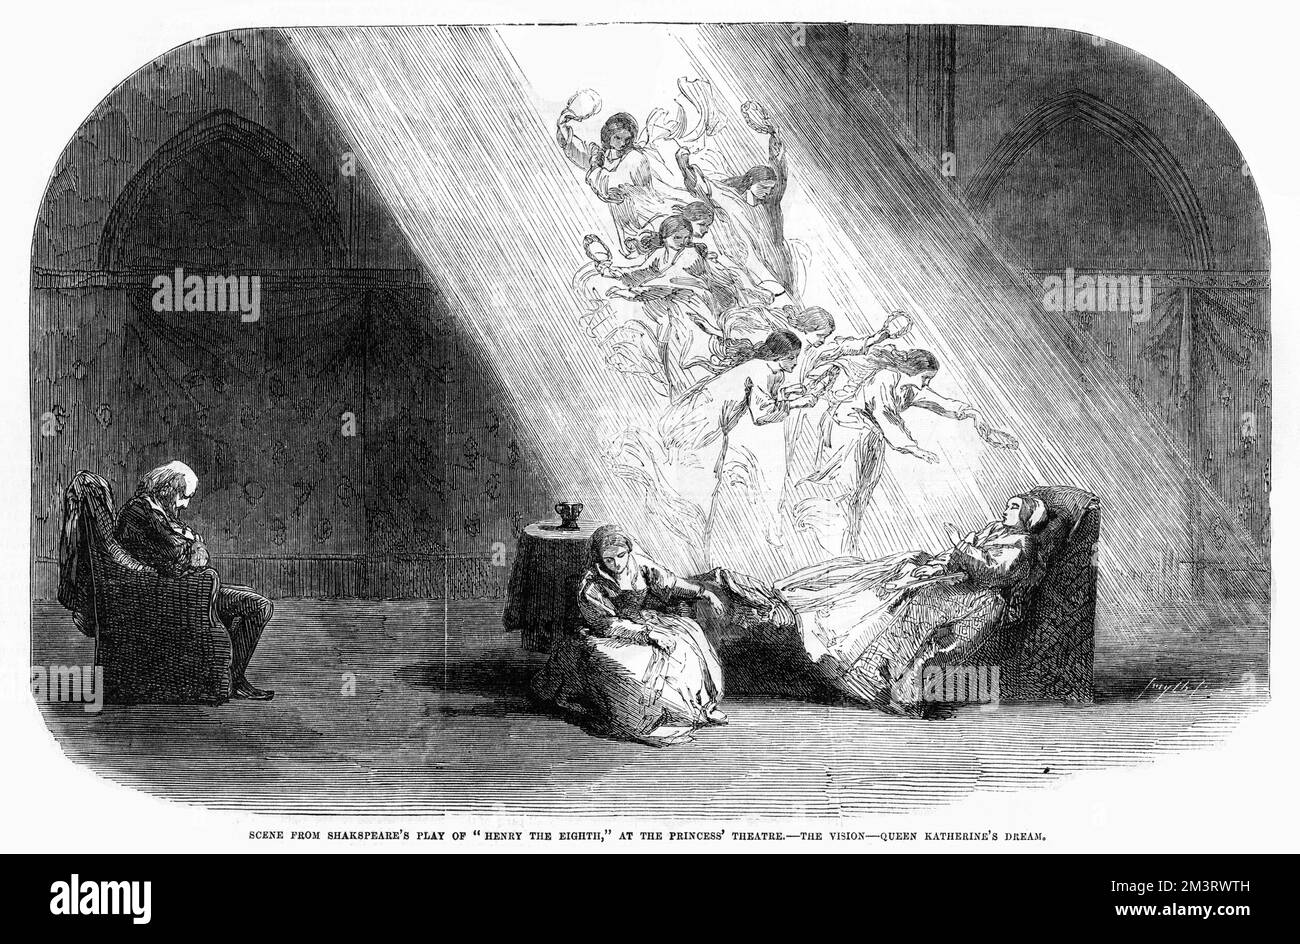 Scène de la pièce de Shakespeare de 'Henry the Eighth' au Théâtre de la princesse - la Vision - le rêve de la reine Katherine. Date: 1855 Banque D'Images